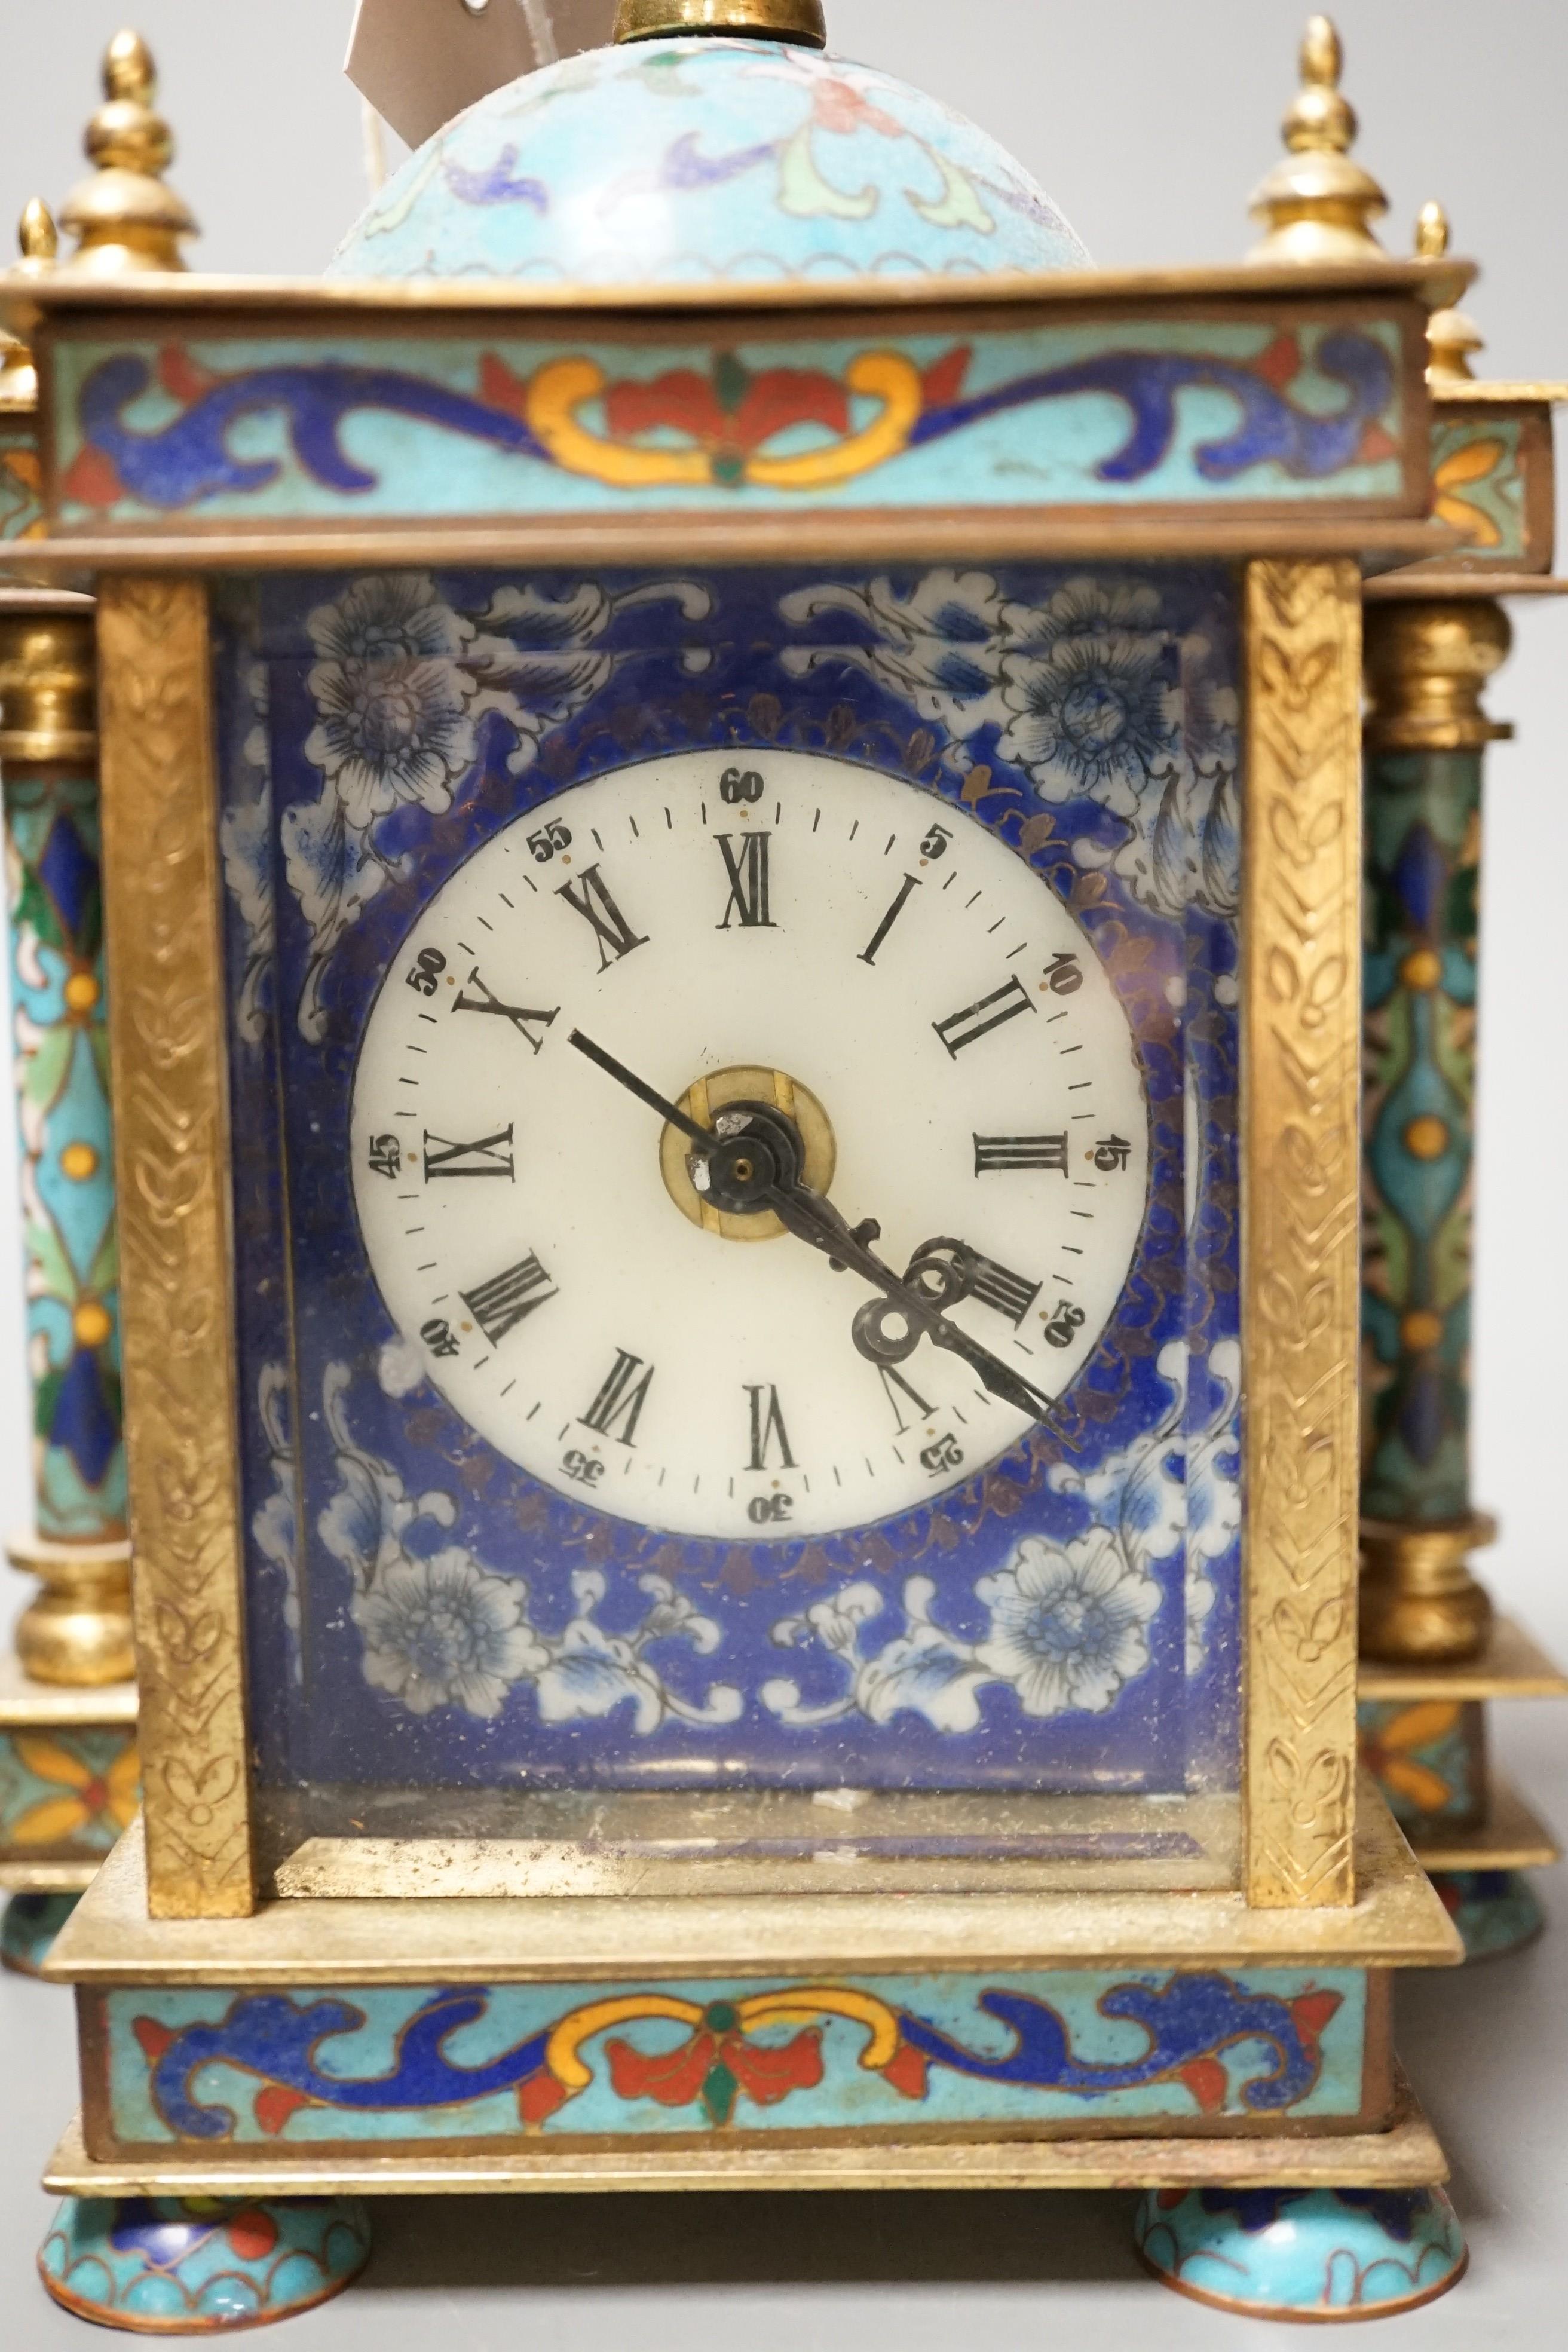 A cloisonné enamel mantel clock, with quartz movement, 22cm